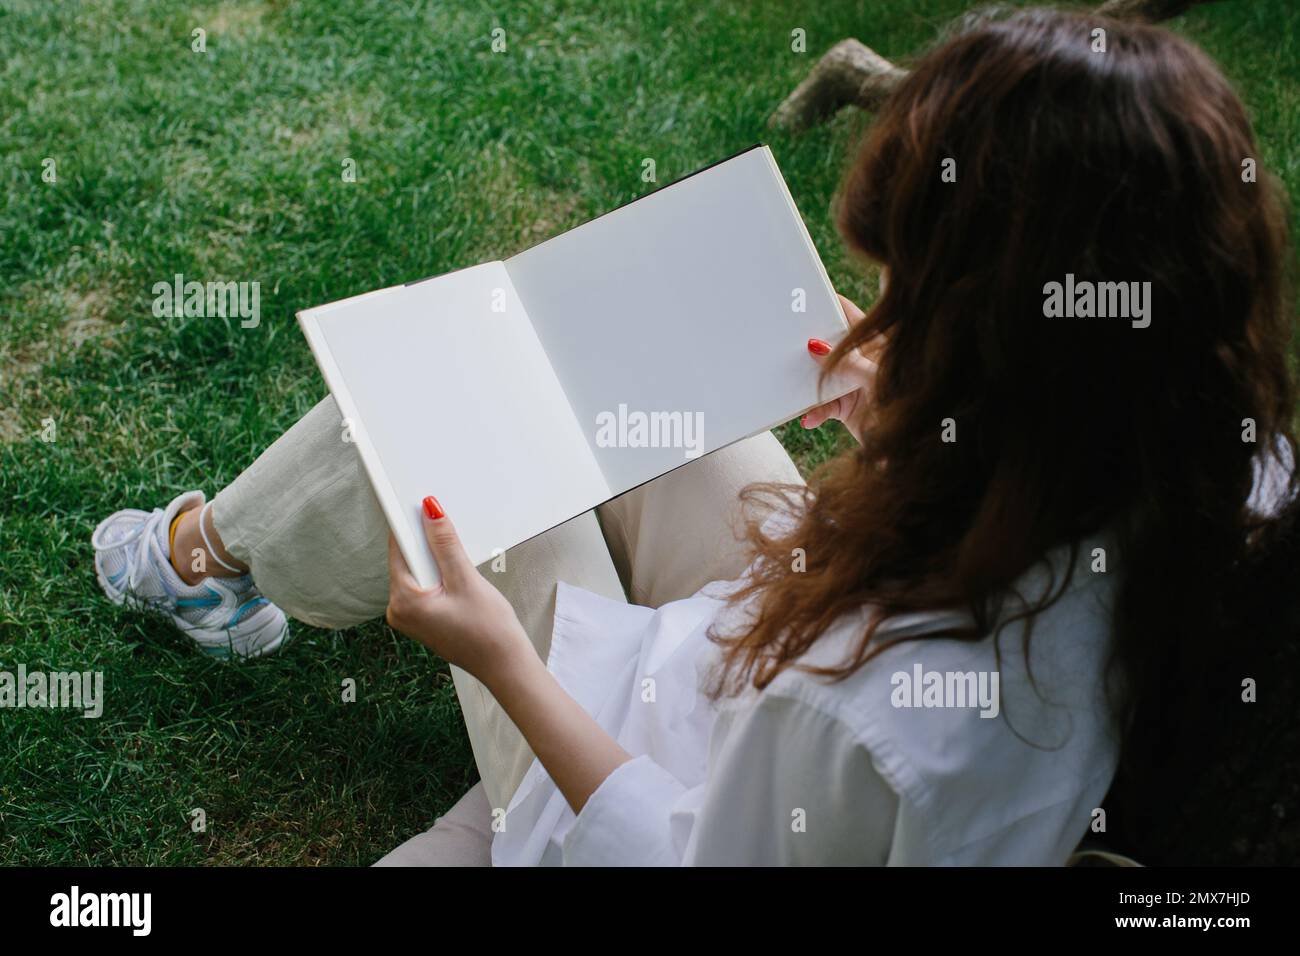 Maquette d'un magazine ou d'un livre. La fille se détend sur la pelouse dans la cour du café, lit un livre. Banque D'Images